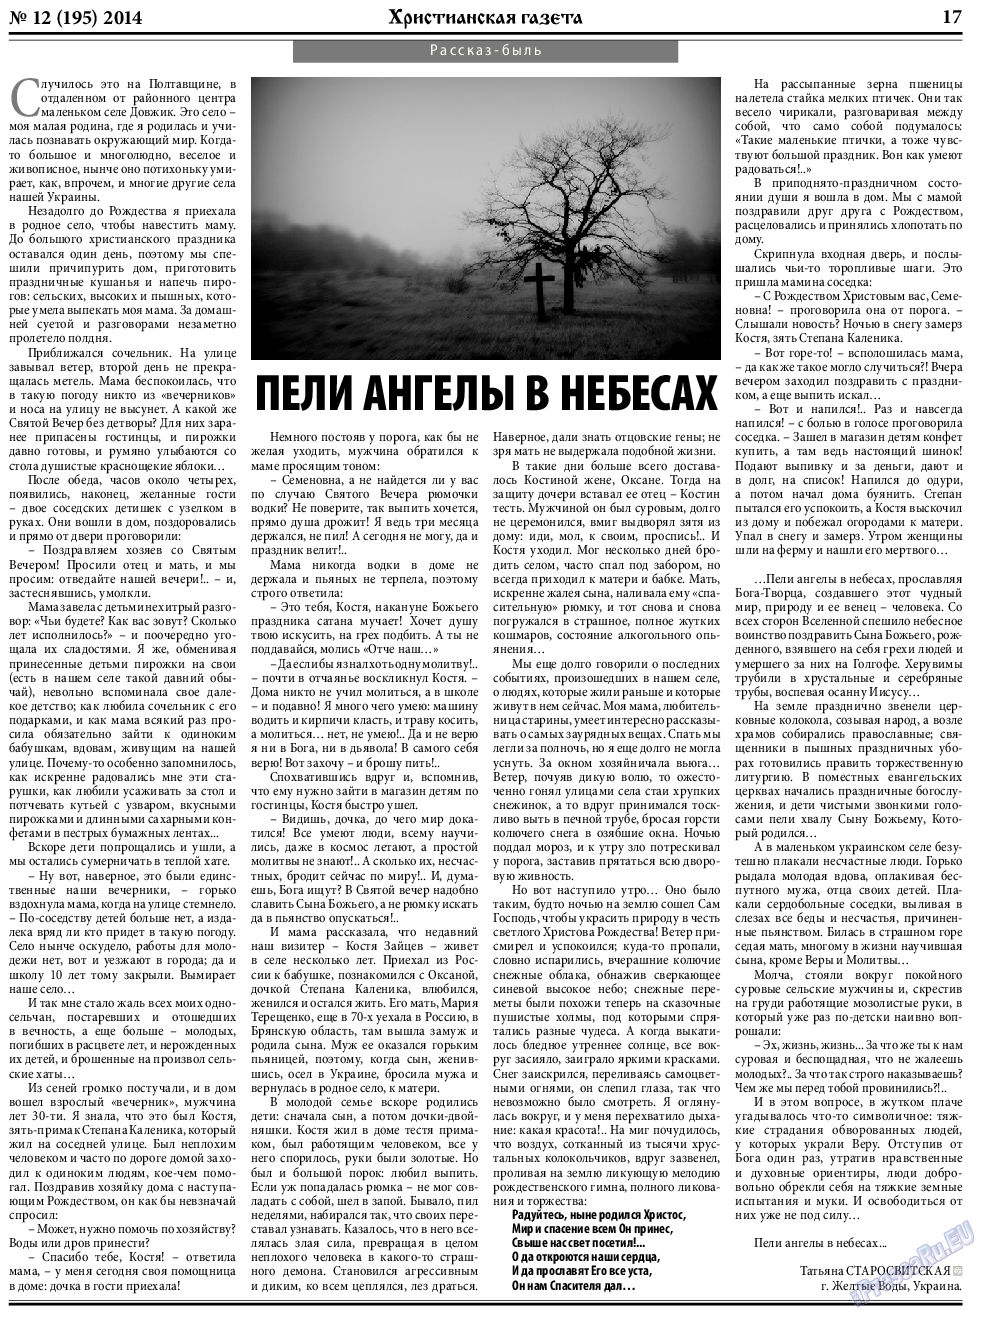 Христианская газета, газета. 2014 №12 стр.25